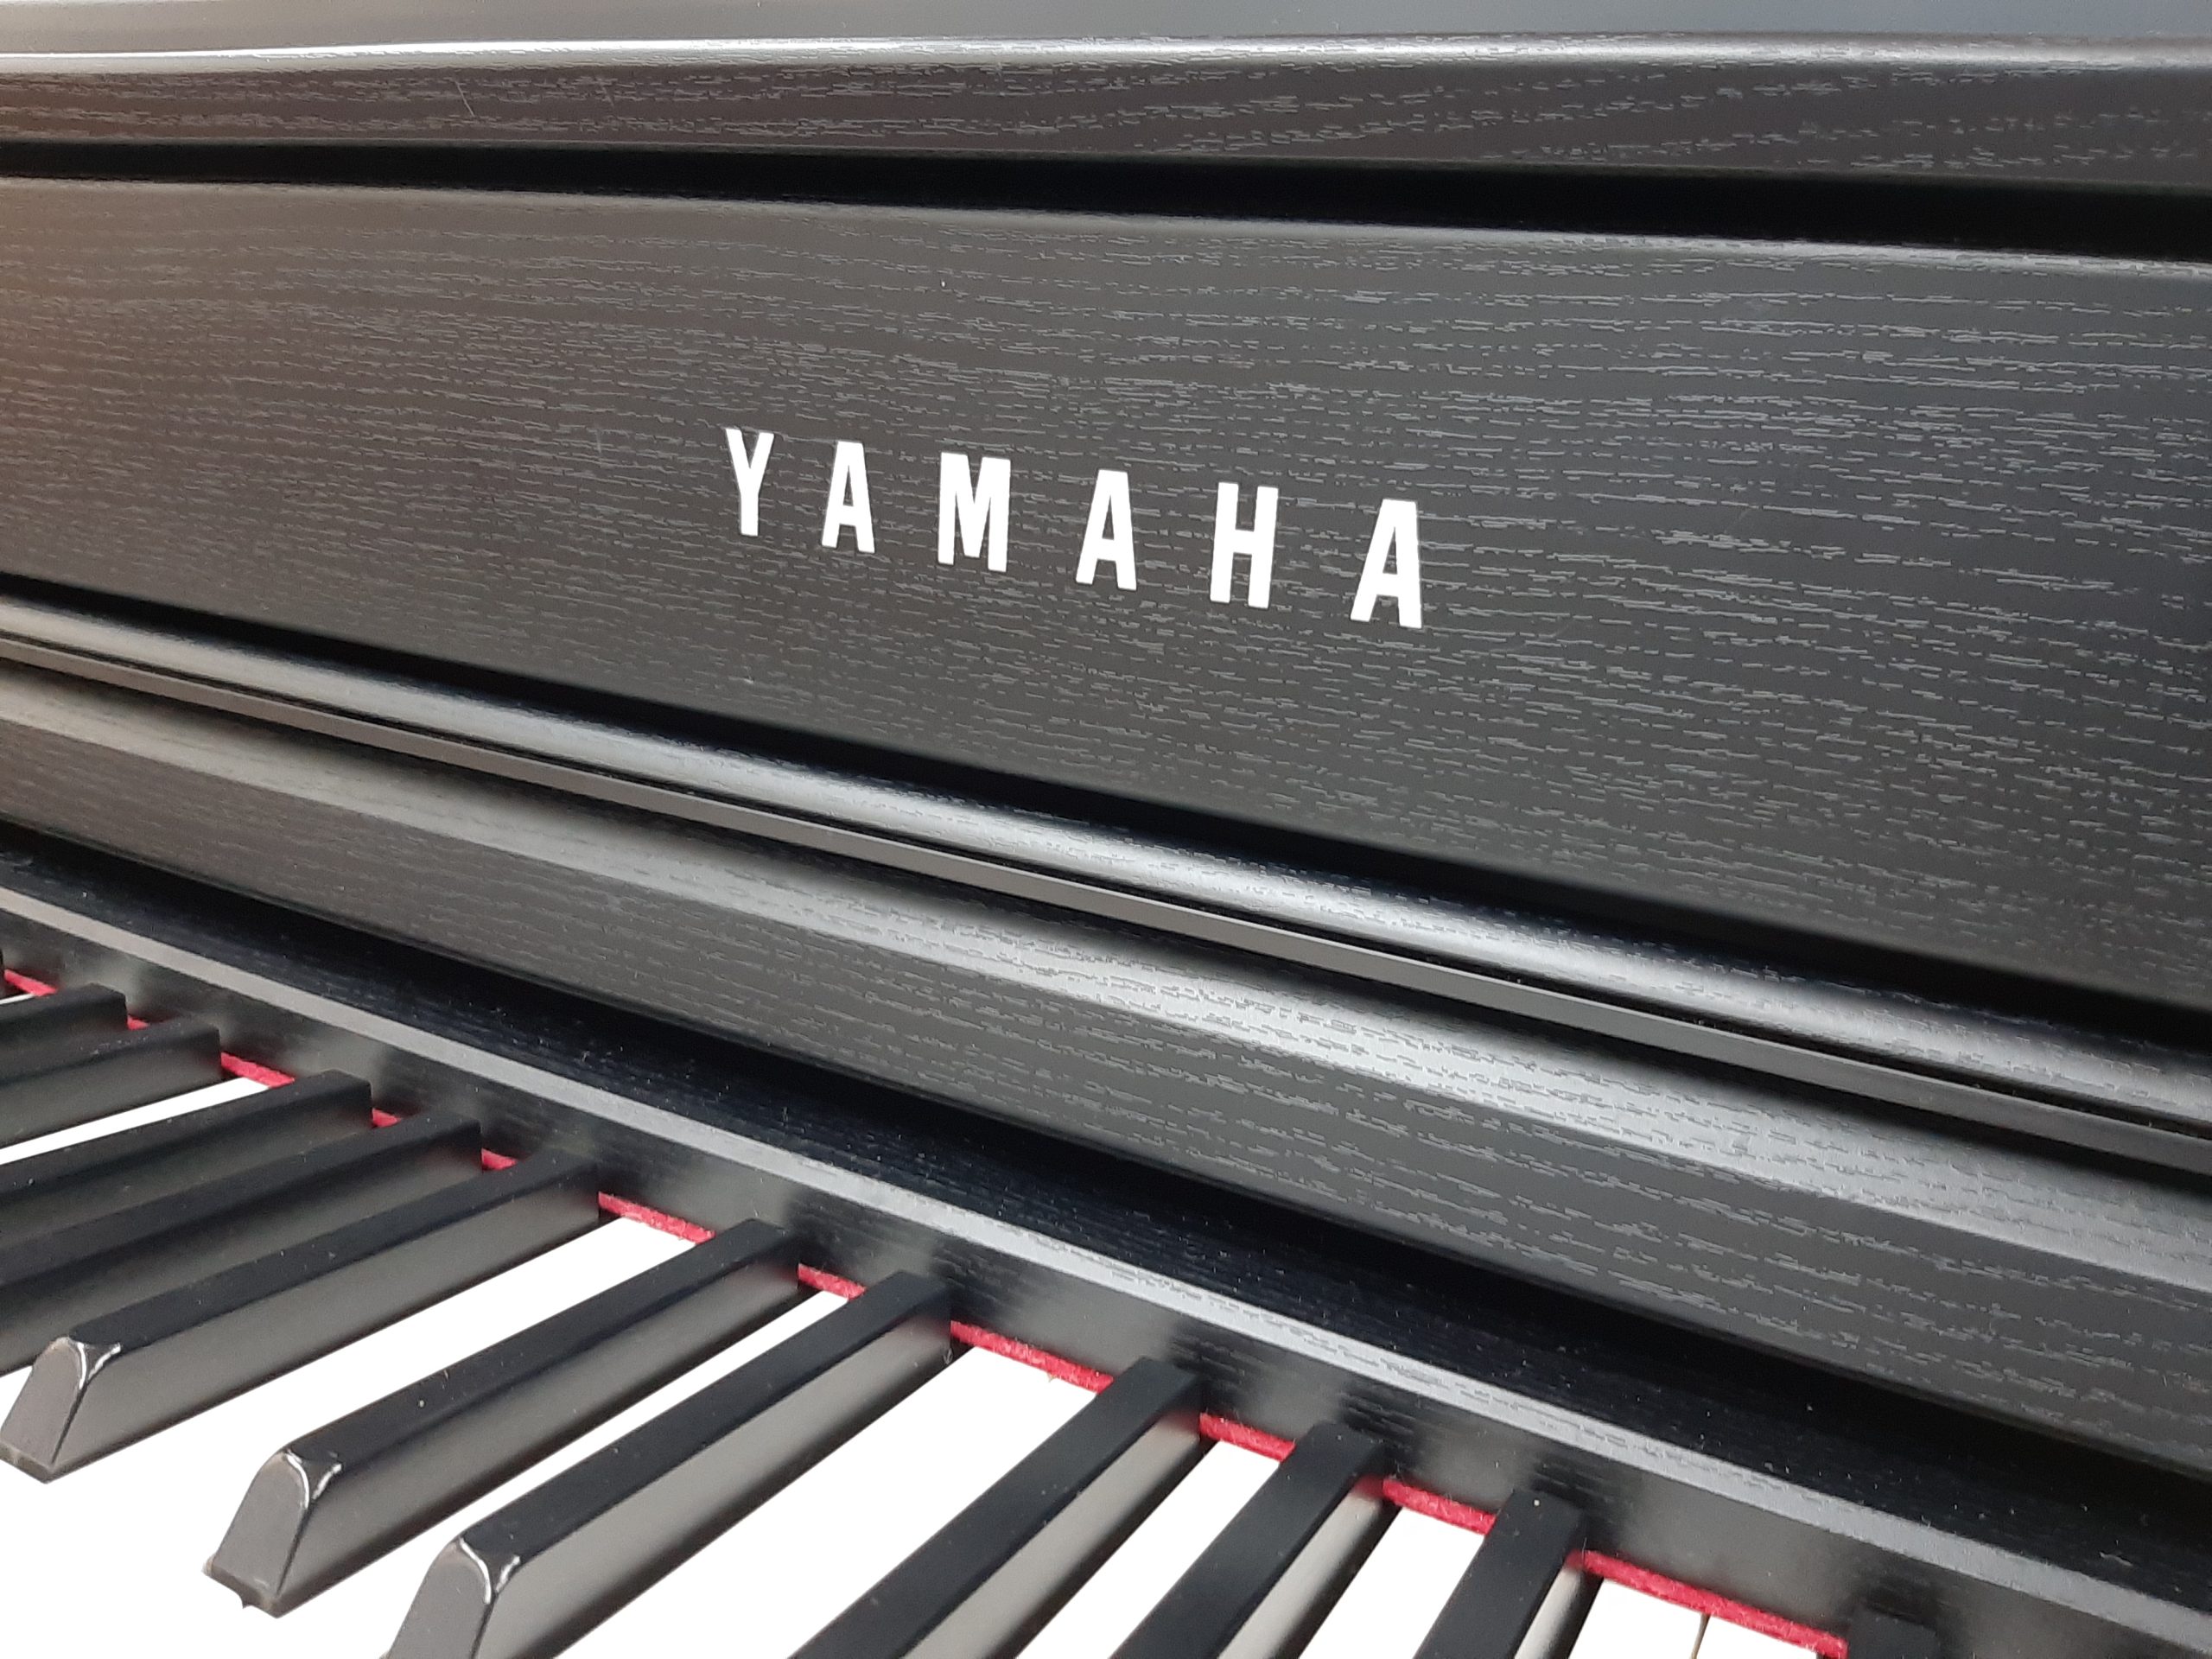 中古電子ピアノ YAMAHA CLP-635B│ピアノ百貨公式サイト